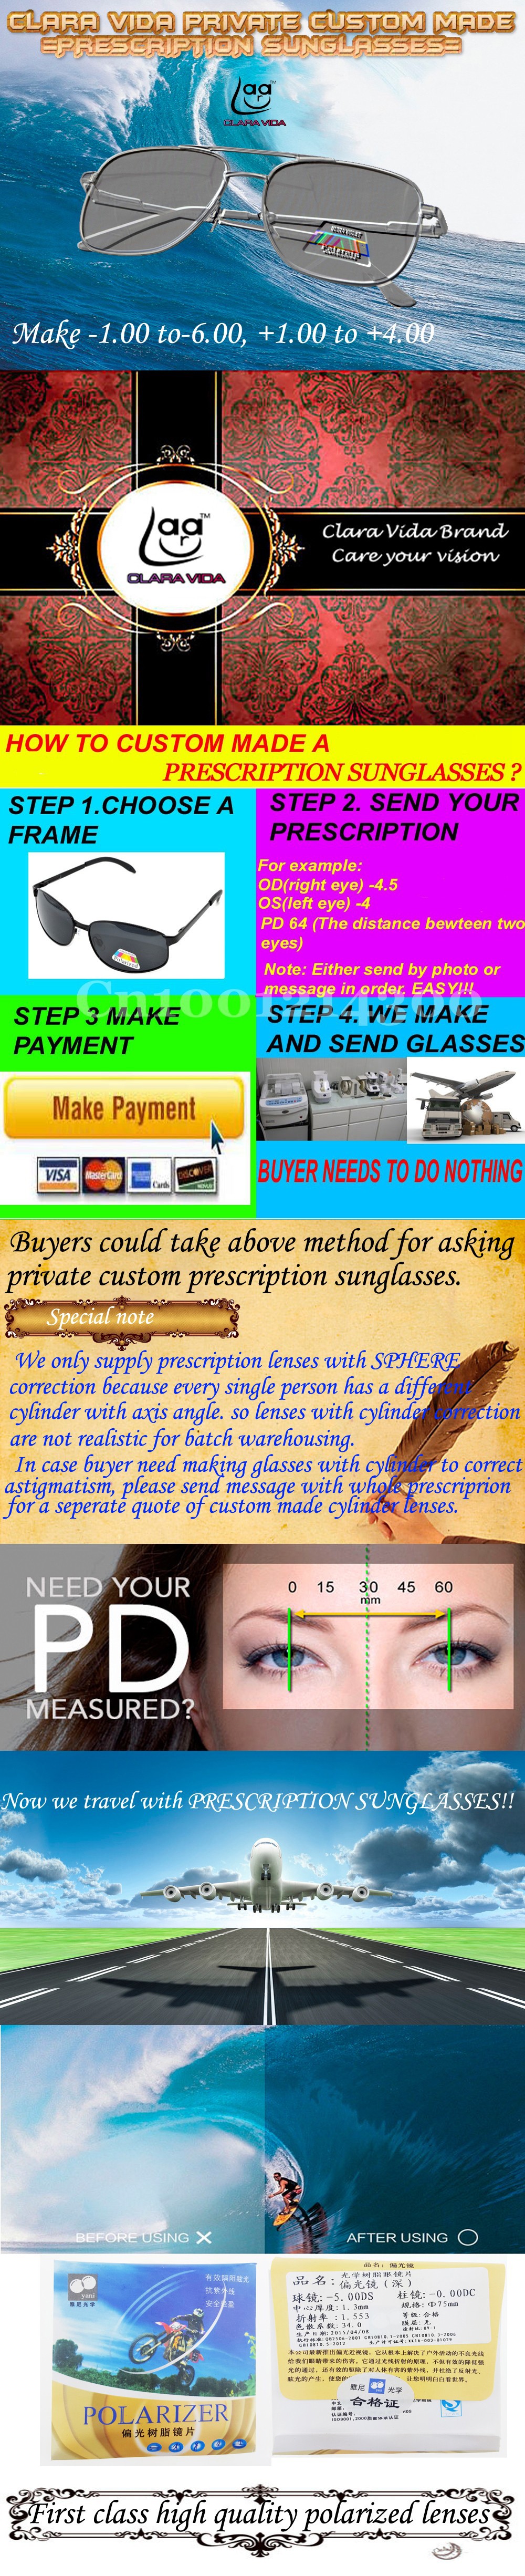 custom made prescription sunglasses